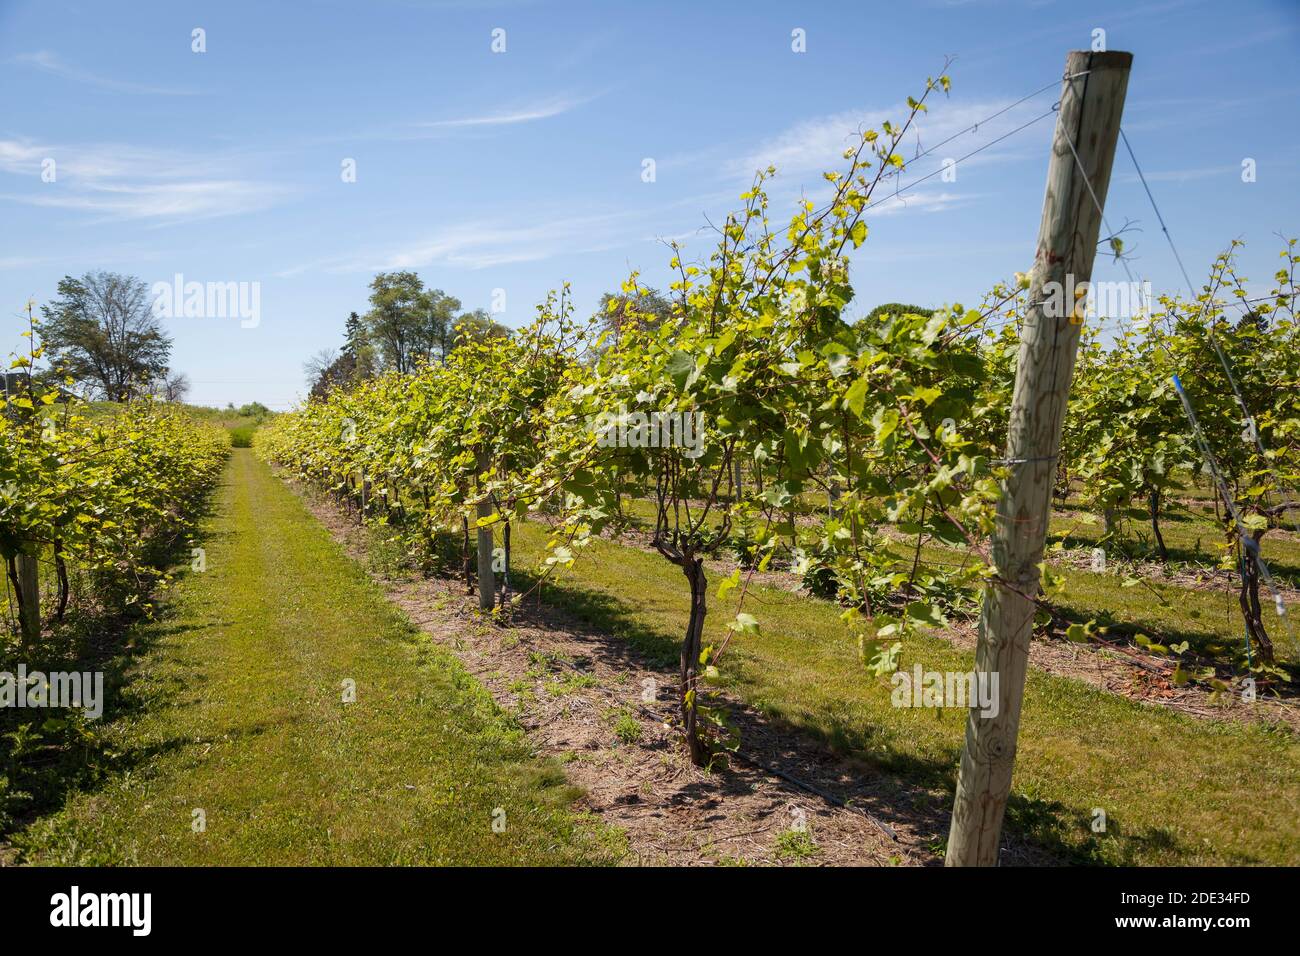 Grape vines in a vineyard in Door County Wisconsin Stock Photo